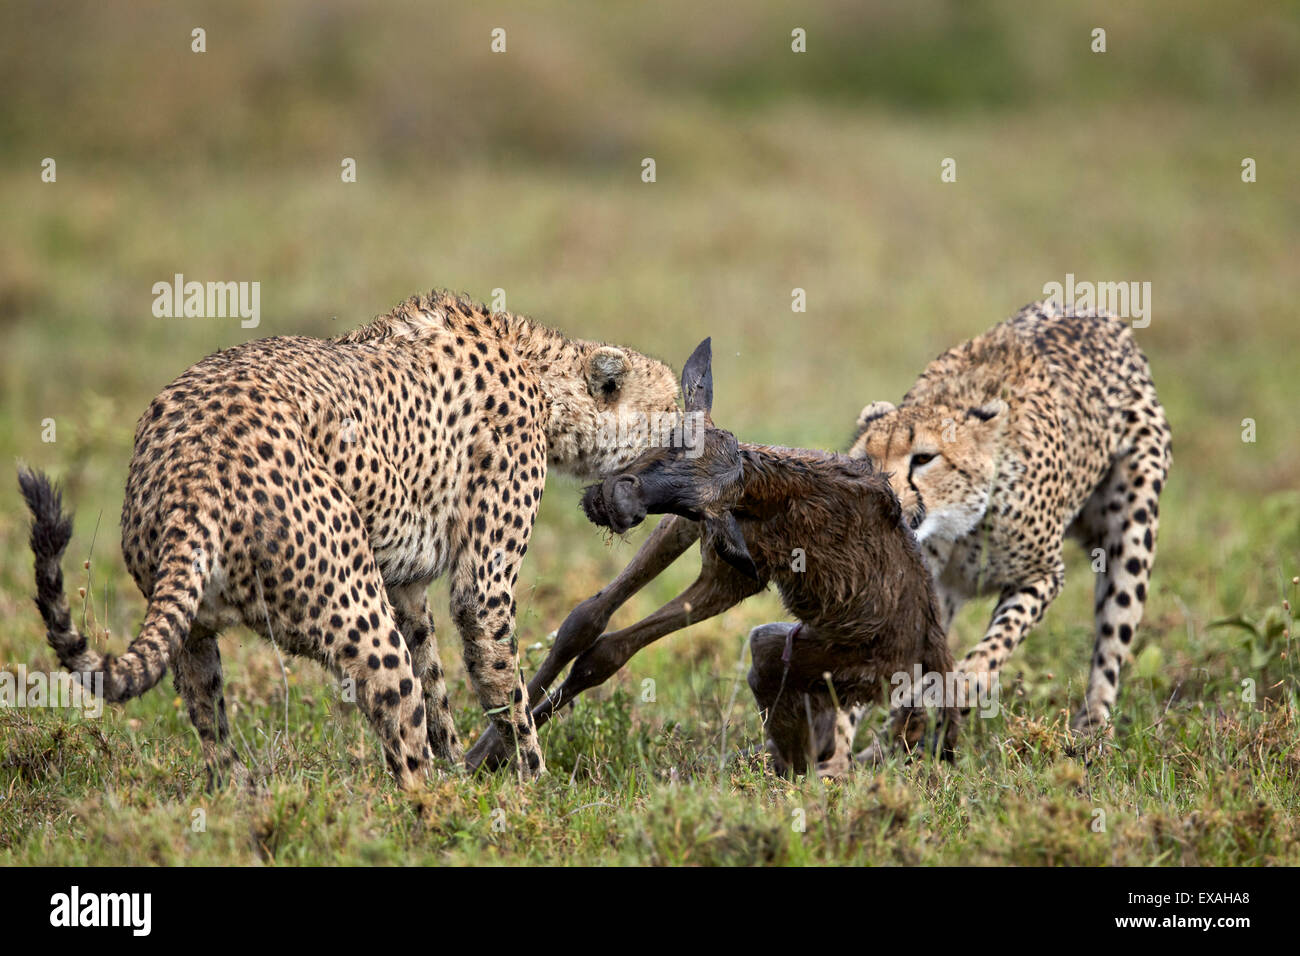 Dos varones de guepardo matar a un recién nacido el ñu azul en la pantorrilla, el Área de Conservación de Ngorongoro, Serengeti, Tanzania, África Oriental Foto de stock